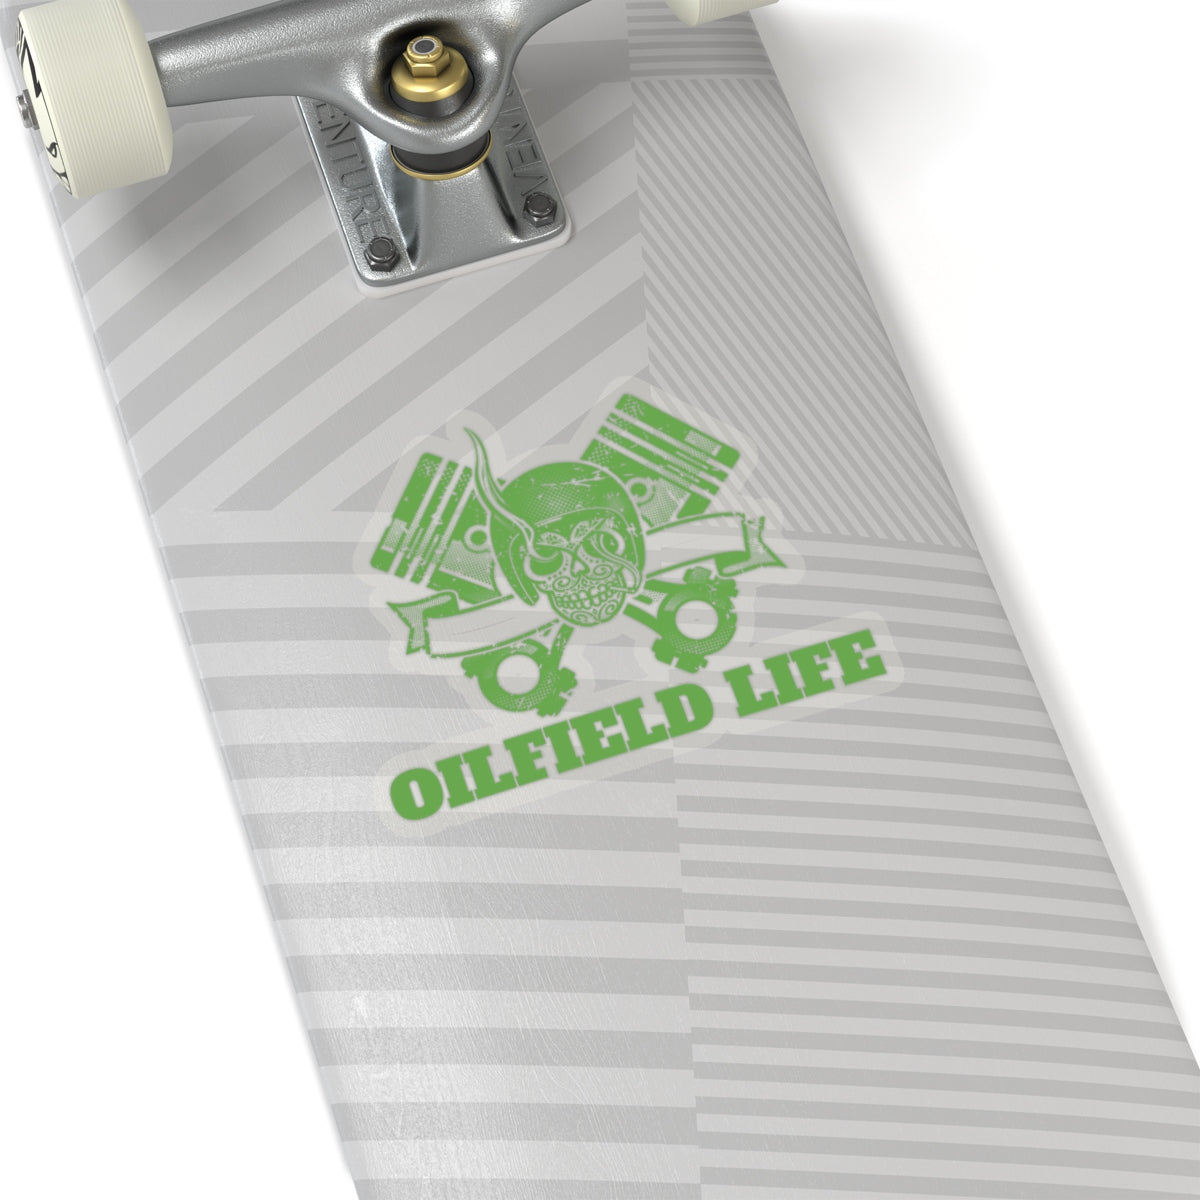 Oilfield Life Skull Sticker